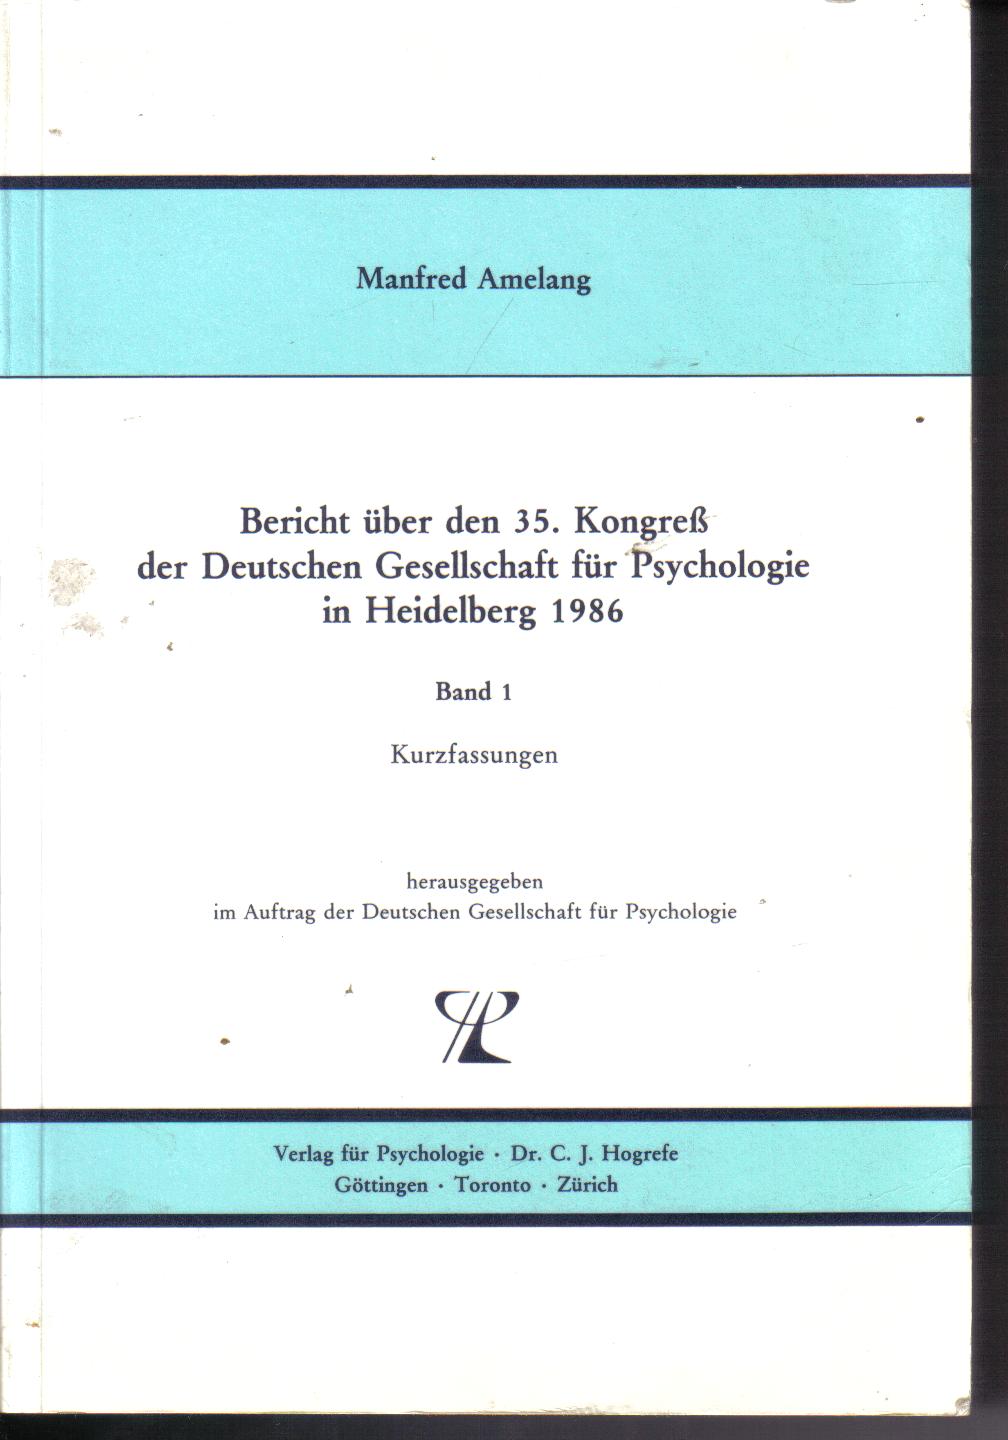 Bericht ueber den 35. Kongress der deutschen Gesellschaft fuer Psychologie in HeidelbergManfred Amelang